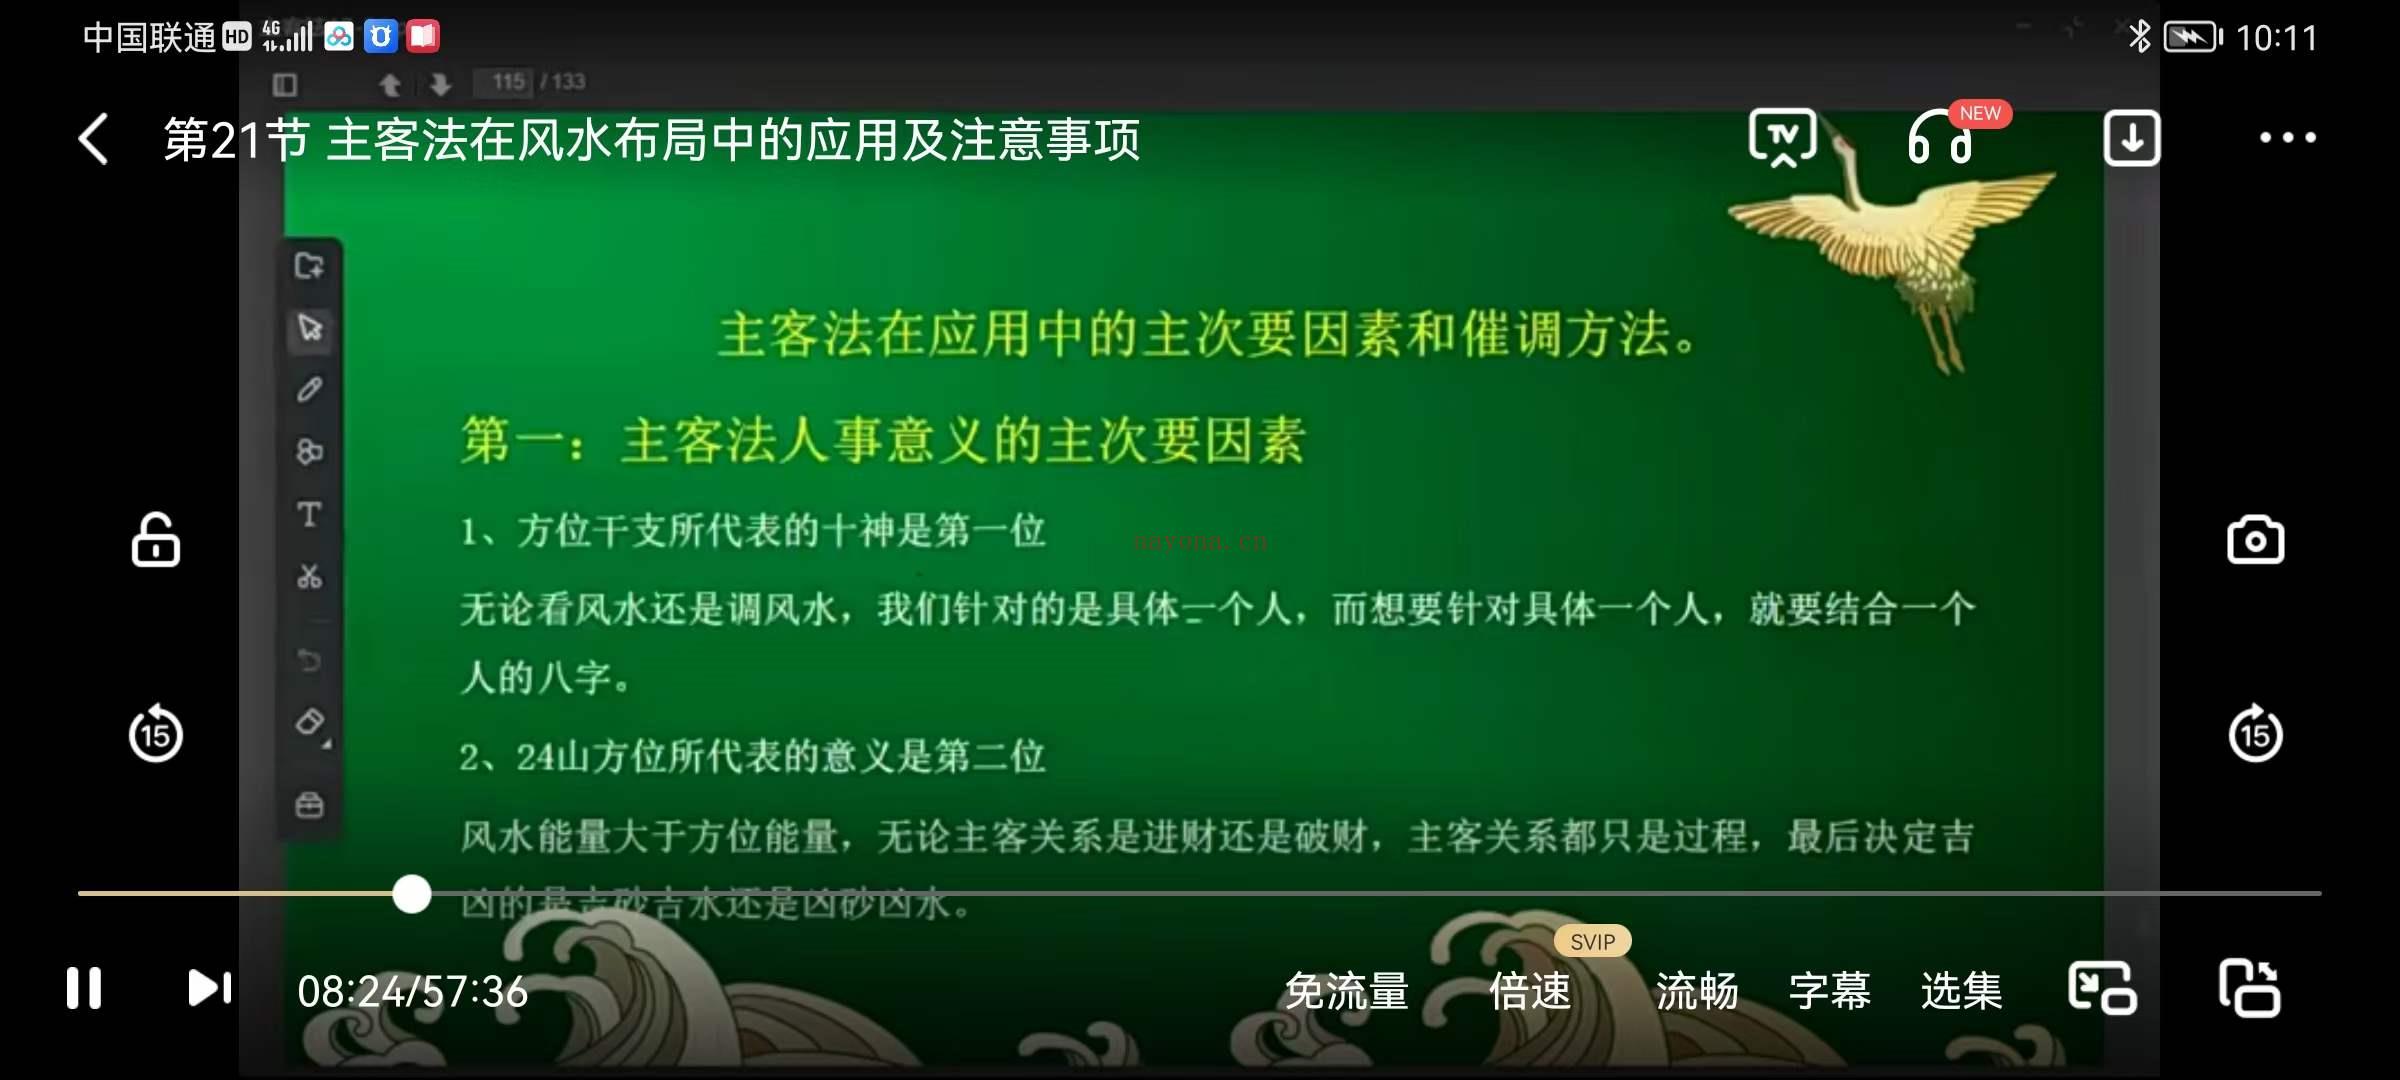 吕文艺的弟子陈路昌《主客系统断法》视频21集